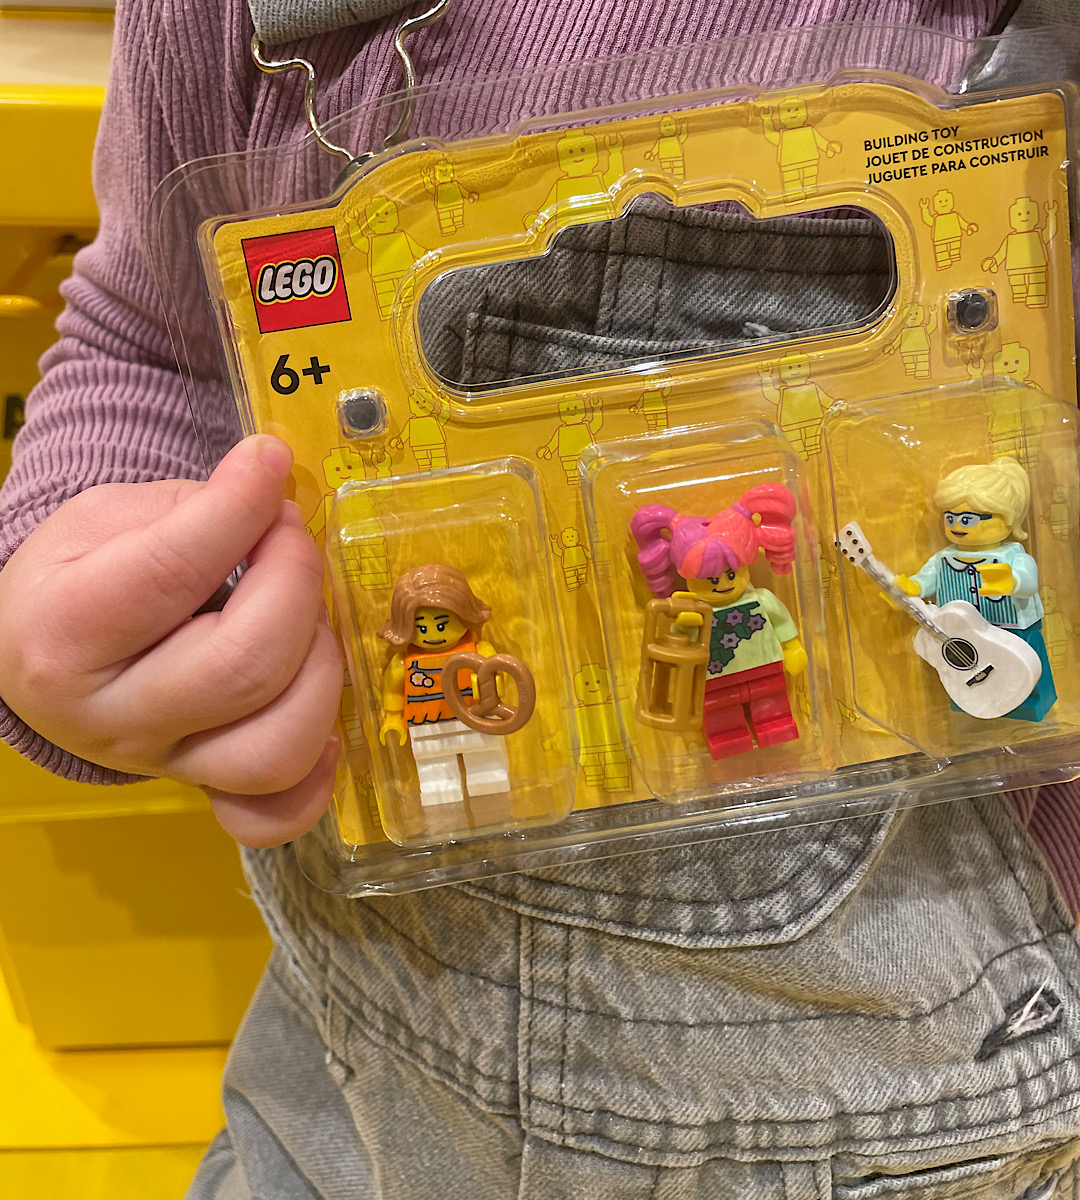 LEGO ビルドアミニフィギュア